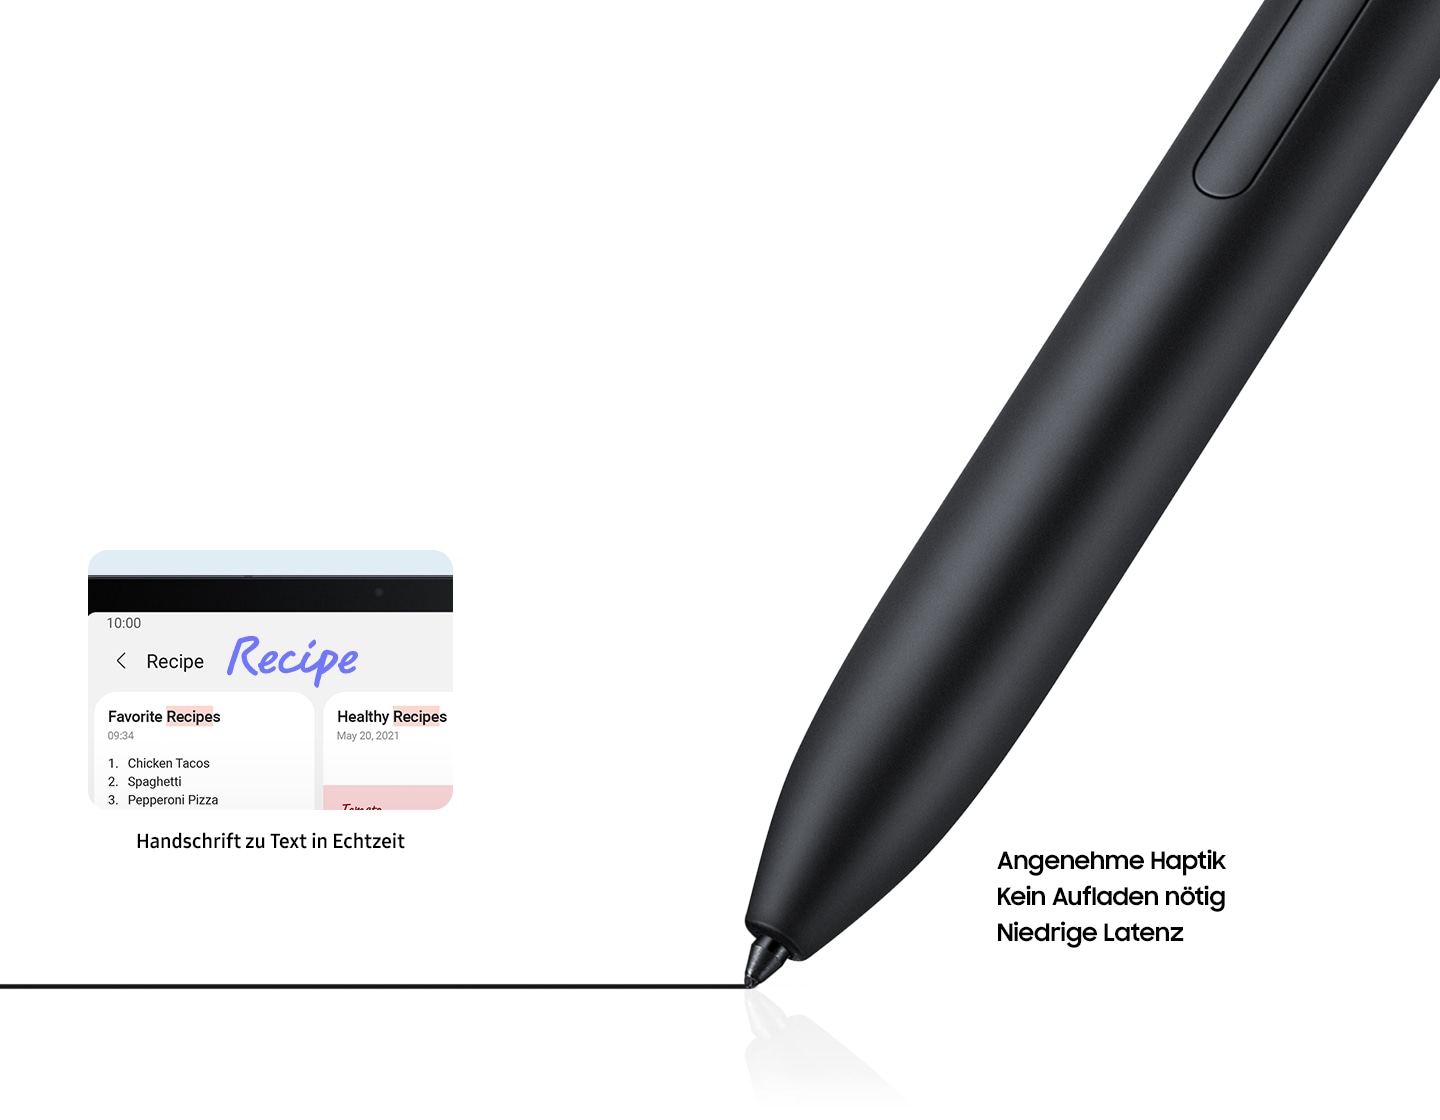 Man sieht eine Nahaufnahme eines S Pen der beim Schreiben eine schwarze Markierung hinterlässt. Es wird eine Miniaturansicht der Suchleiste in Samsung Notes mit Rezepten gezeigt. Das Wort 